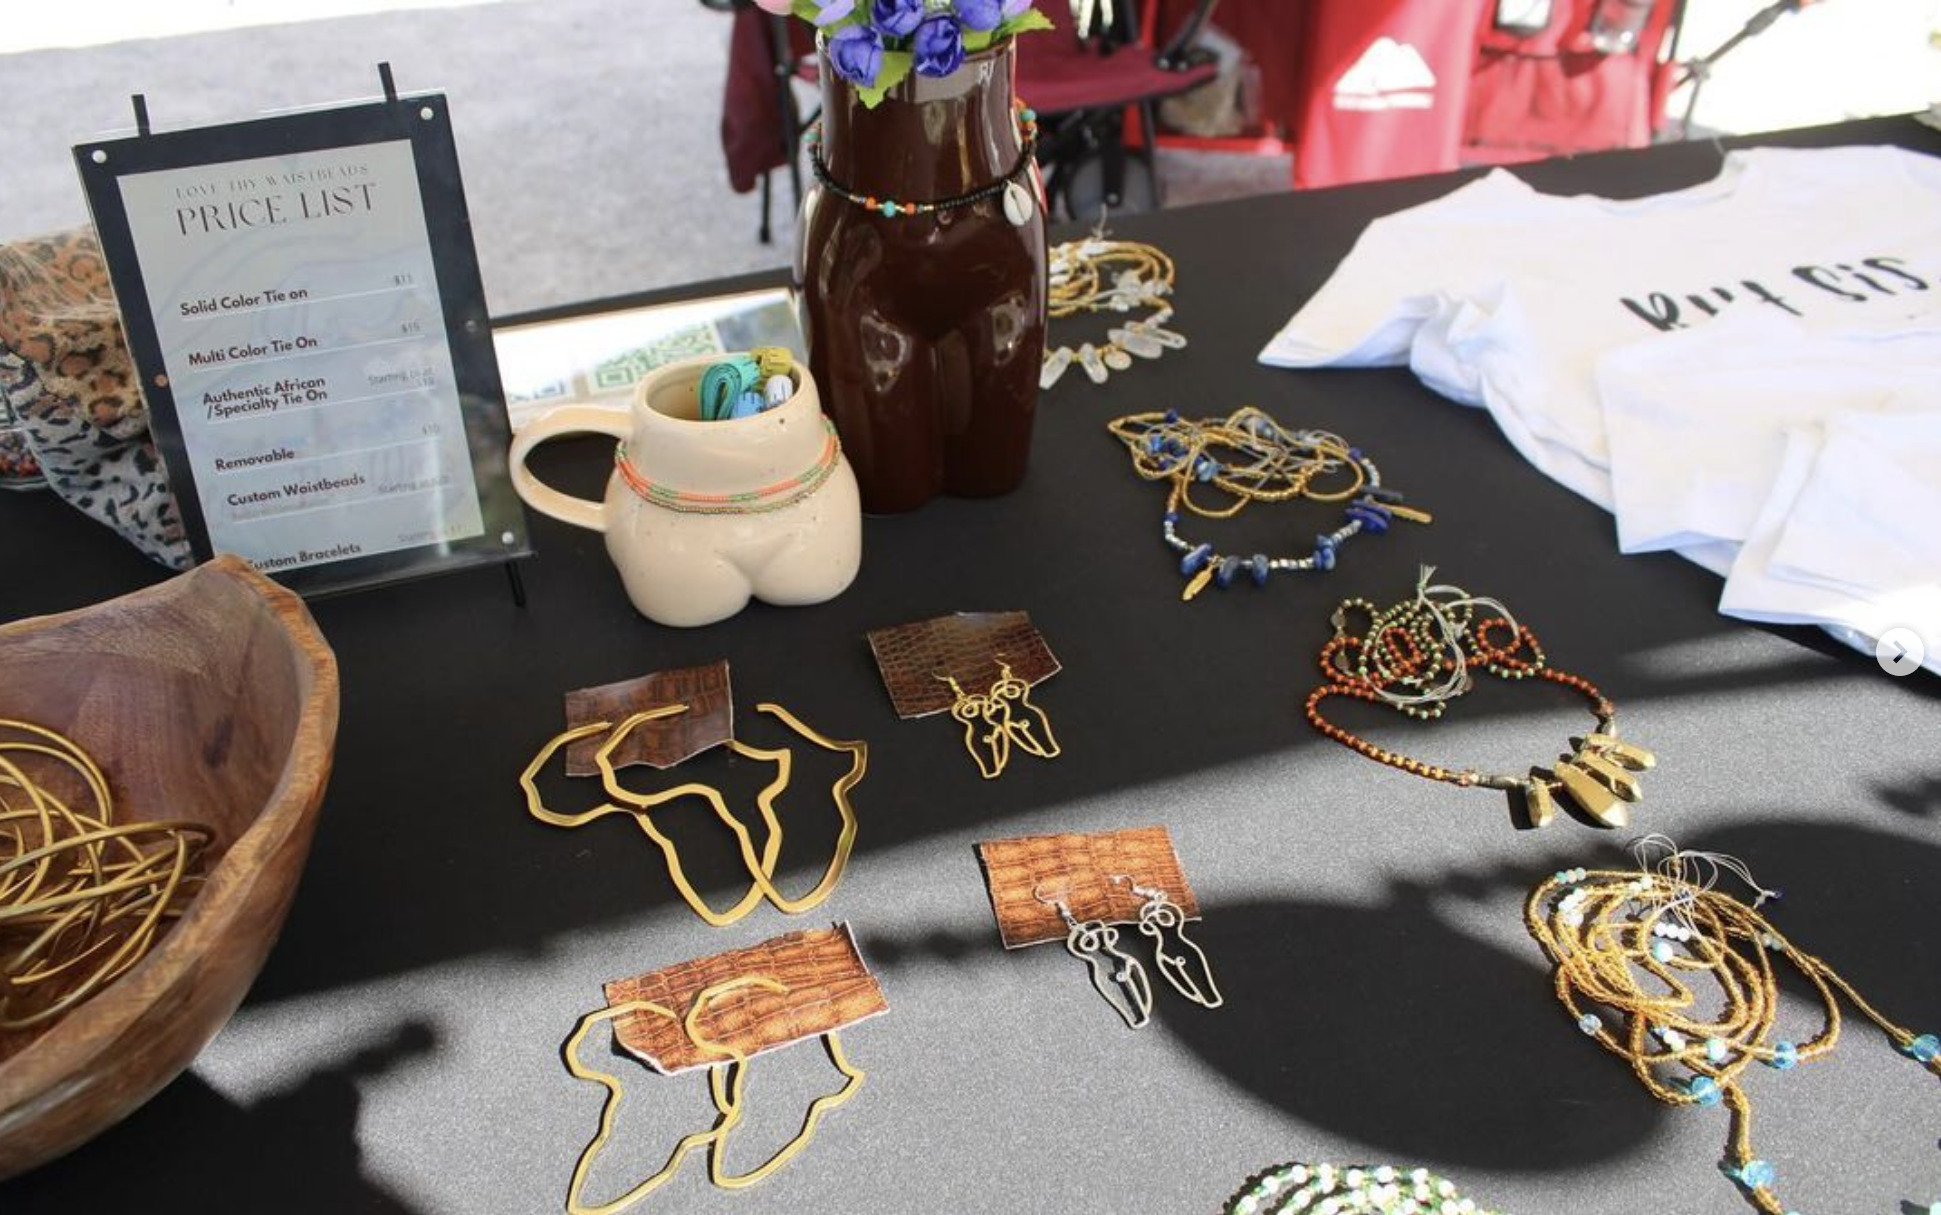 vendor items at the 13th & 13th art market